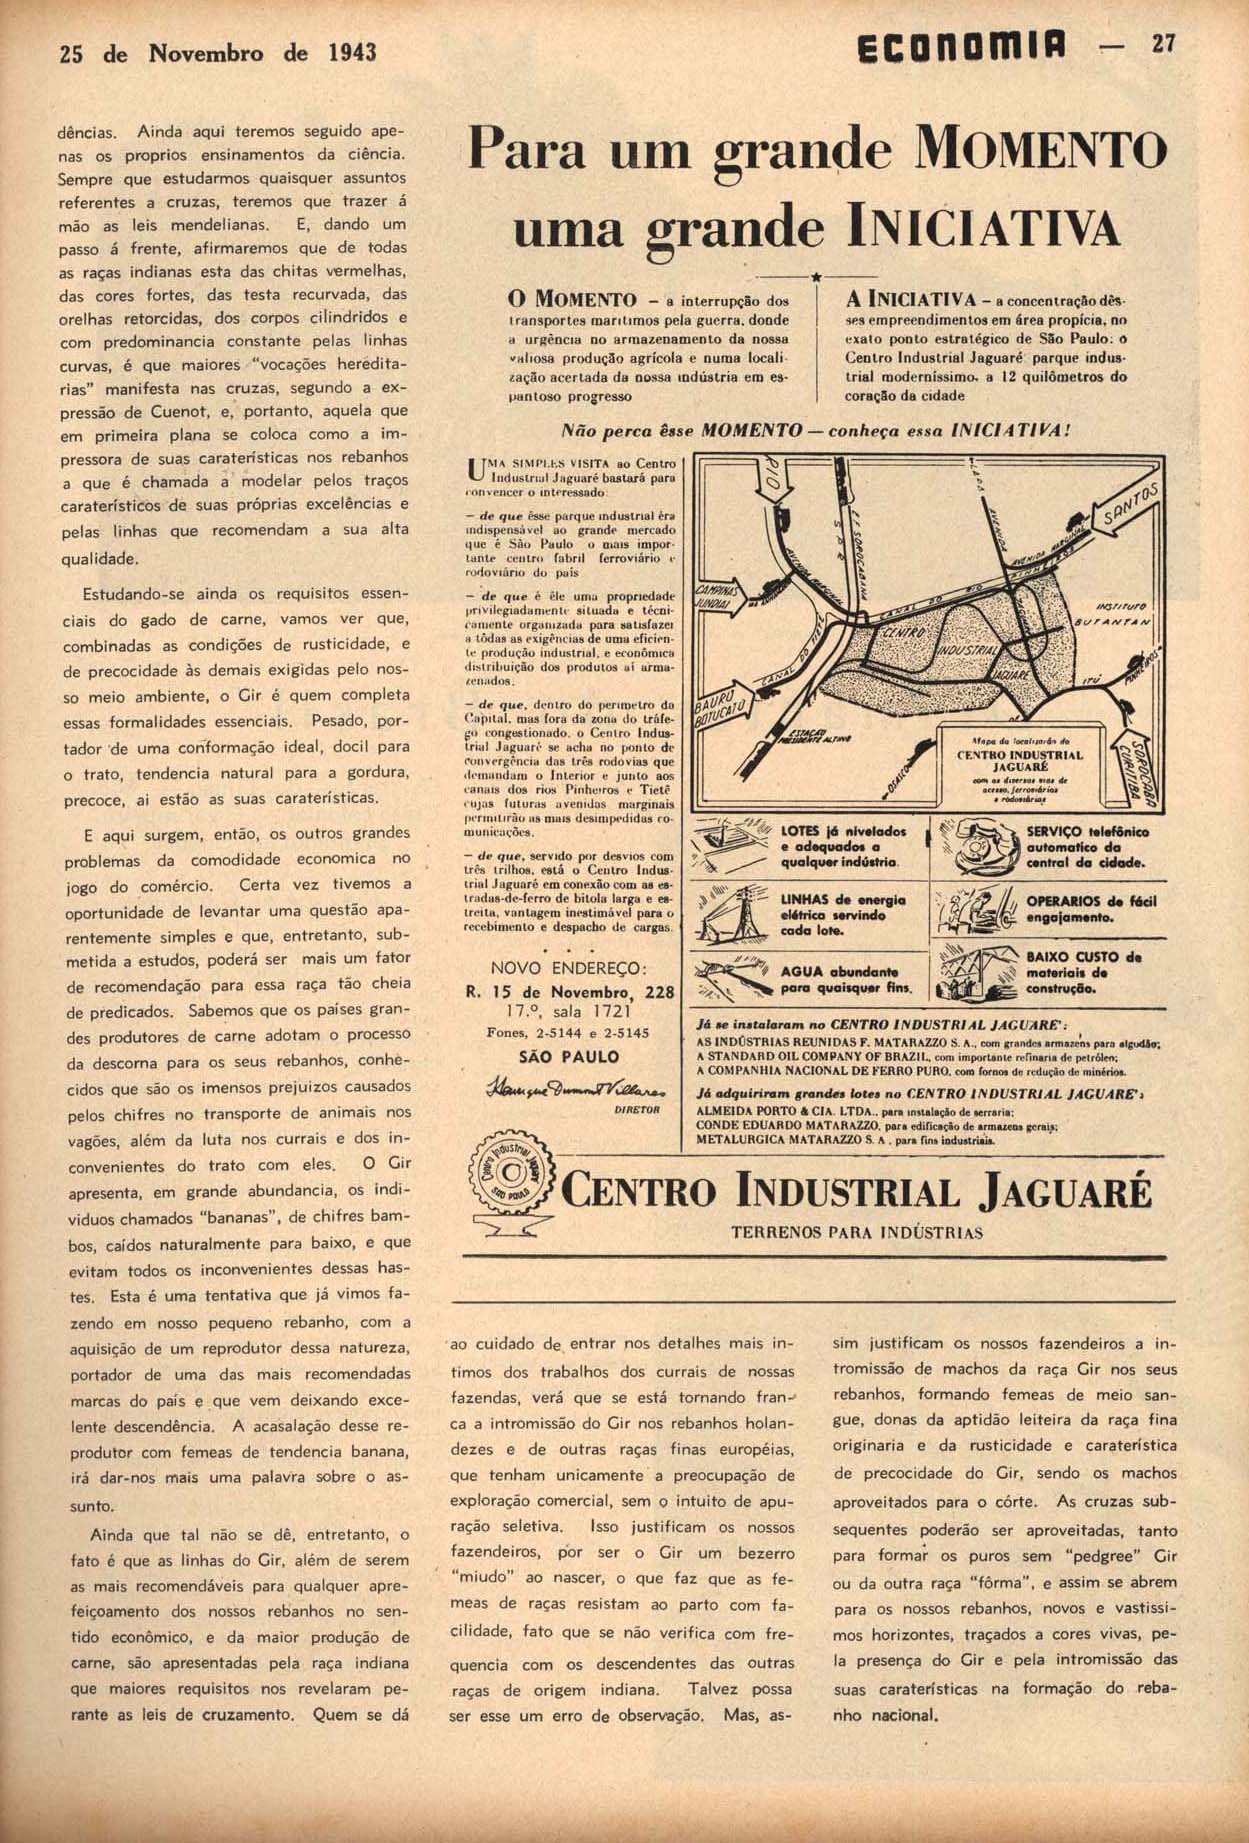 PARA um grande movimento uma grande iniciativa. Economia, Rio de Janeiro, ano 5, n. 54, p. 27, nov. 1943.